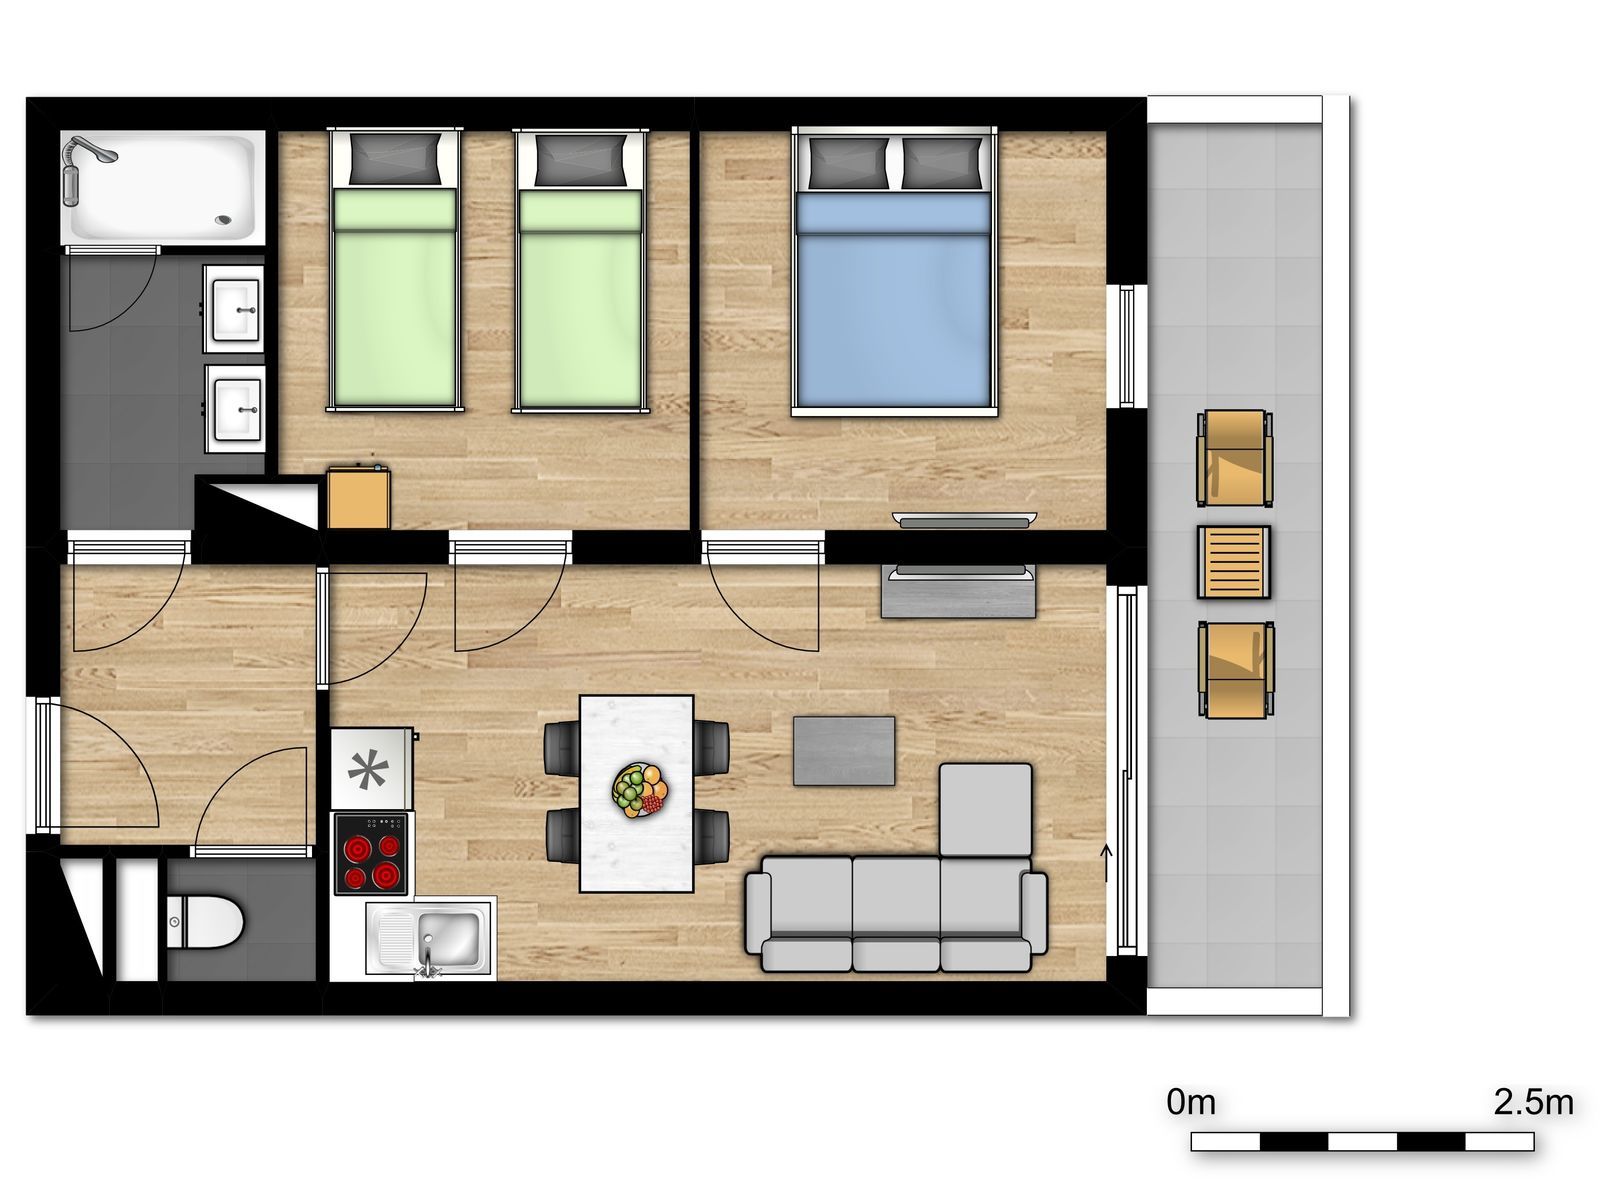 Appartement standard pour 6 personnes avec lit double, lits simples et un canapé-lit.